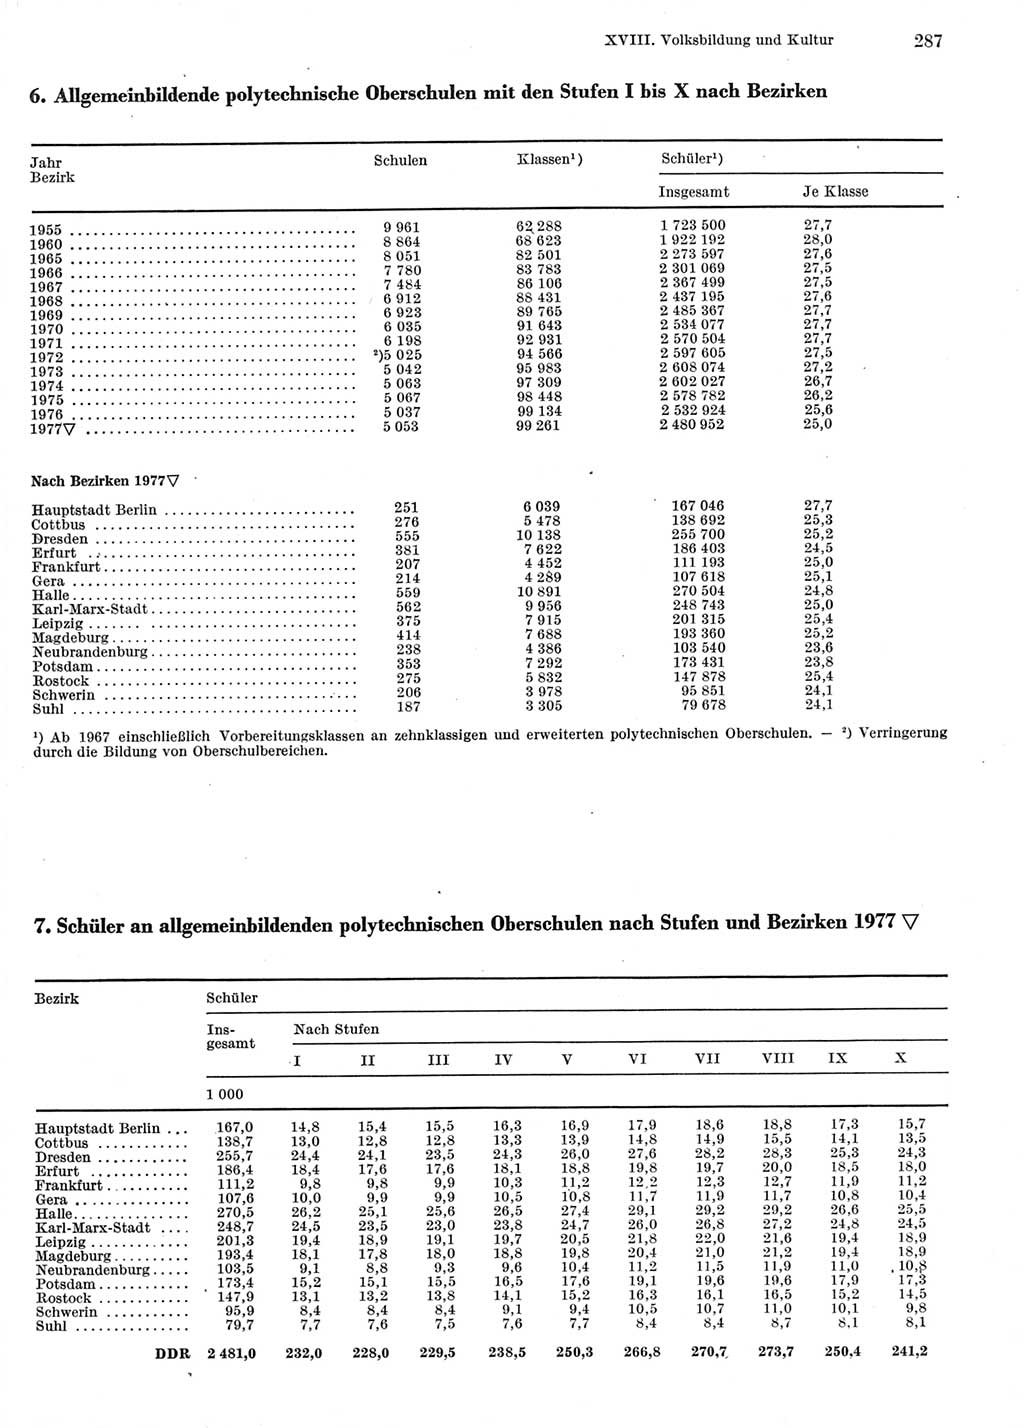 Statistisches Jahrbuch der Deutschen Demokratischen Republik (DDR) 1978, Seite 287 (Stat. Jb. DDR 1978, S. 287)